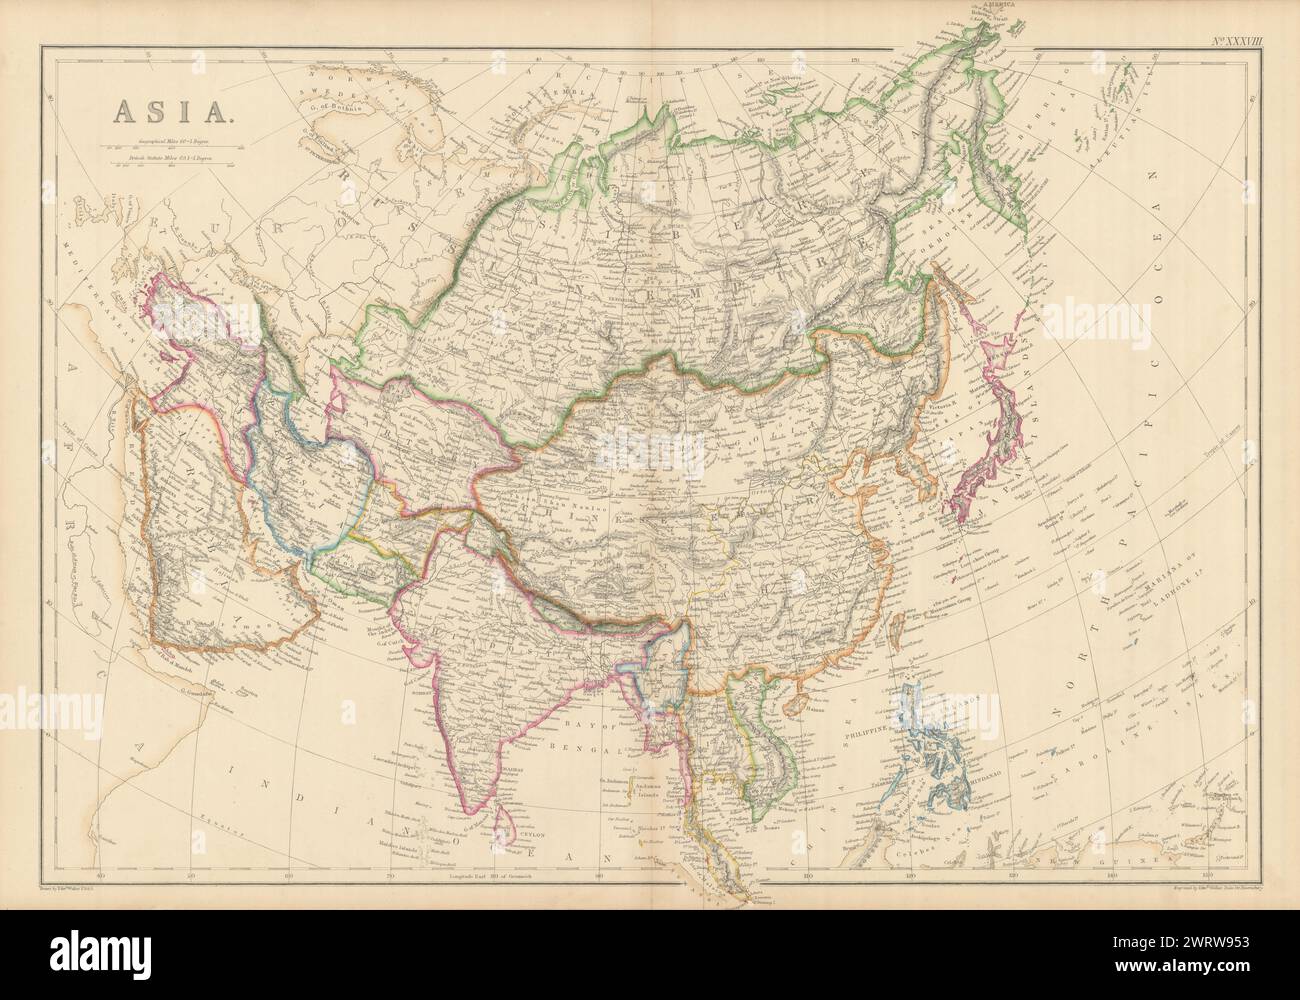 Asien von Edward Weller. Abou Thubbi/Abu Dhabi. Unabhängige Kashmir 1860 alte Karte Stockfoto